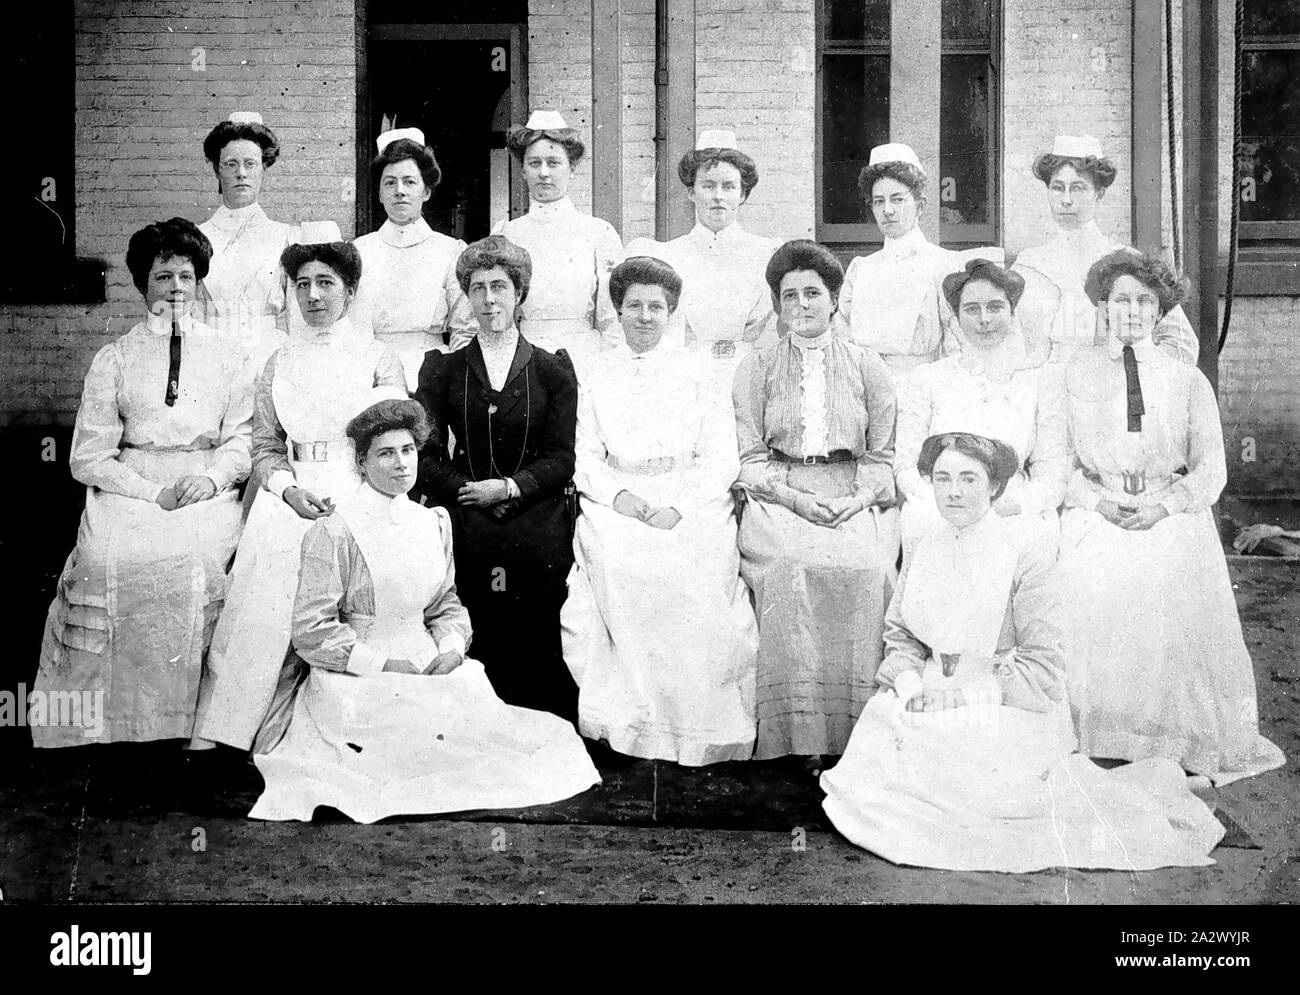 Negative - Melbourne, Victoria, circa 1910, Staff at the Queen Victoria Hospital Stock Photo